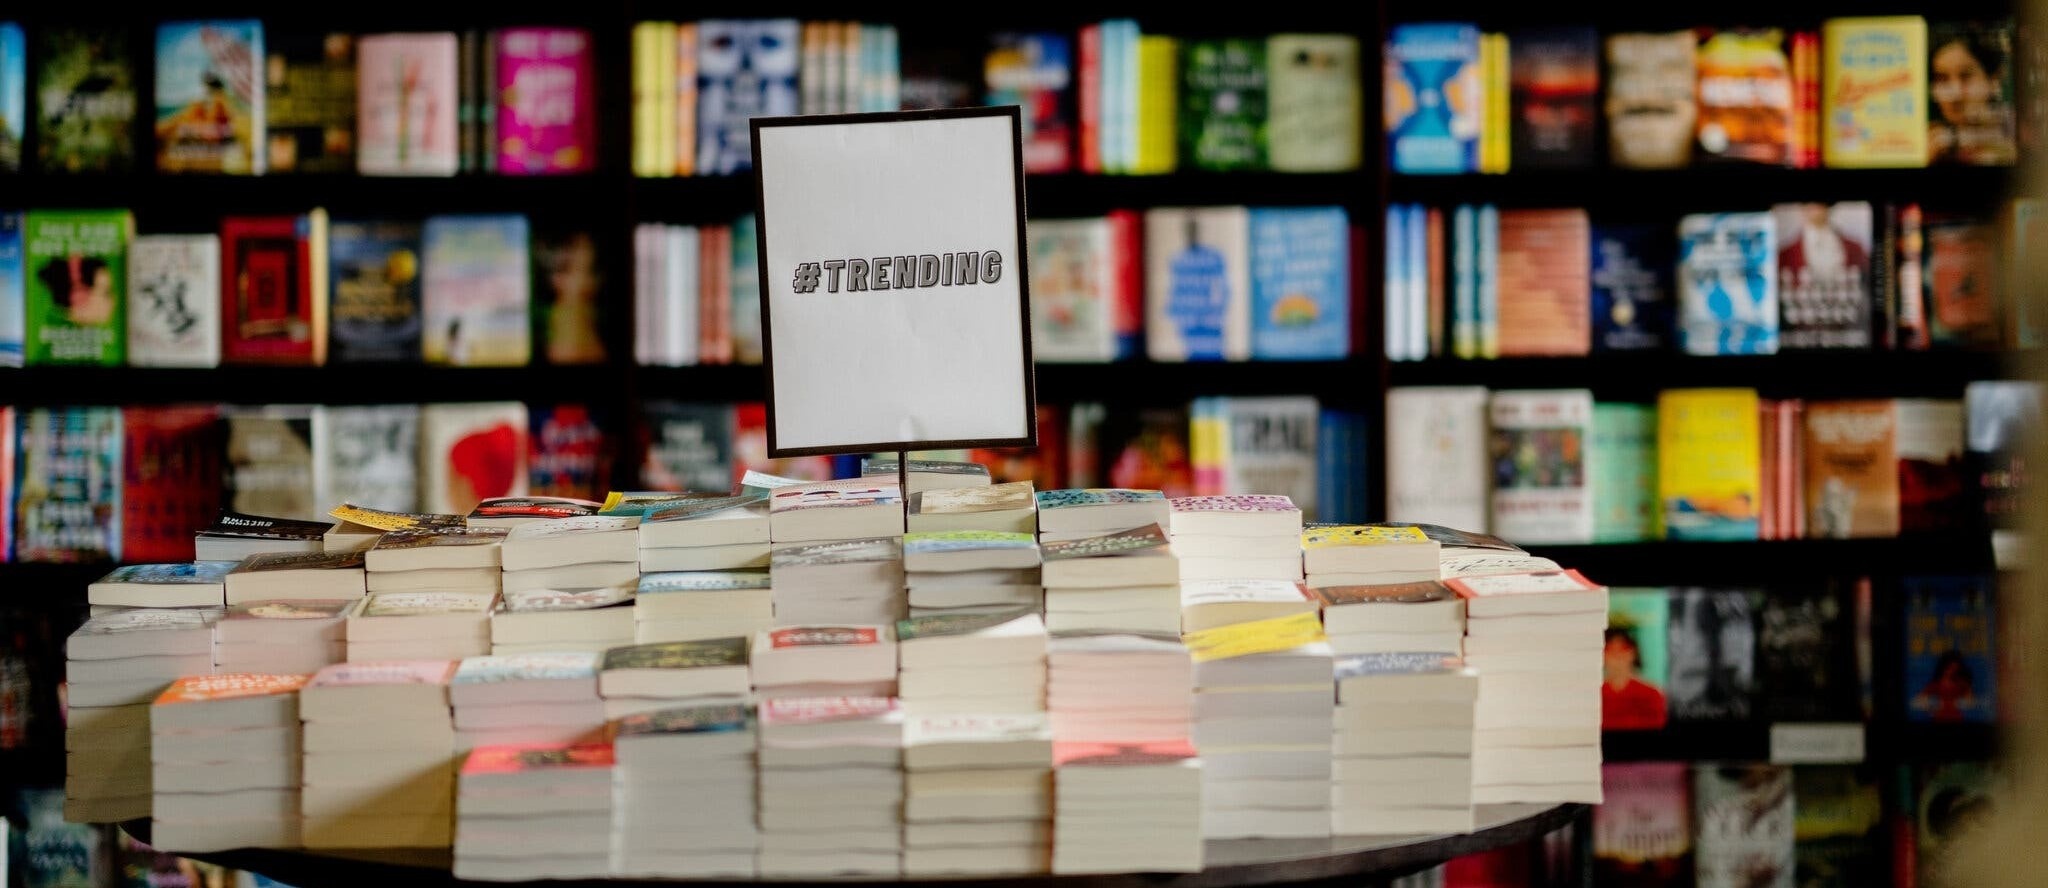 ''Luật ngầm'' khiến nhà văn phải trở thành TikToker để bán sách - ảnh 1